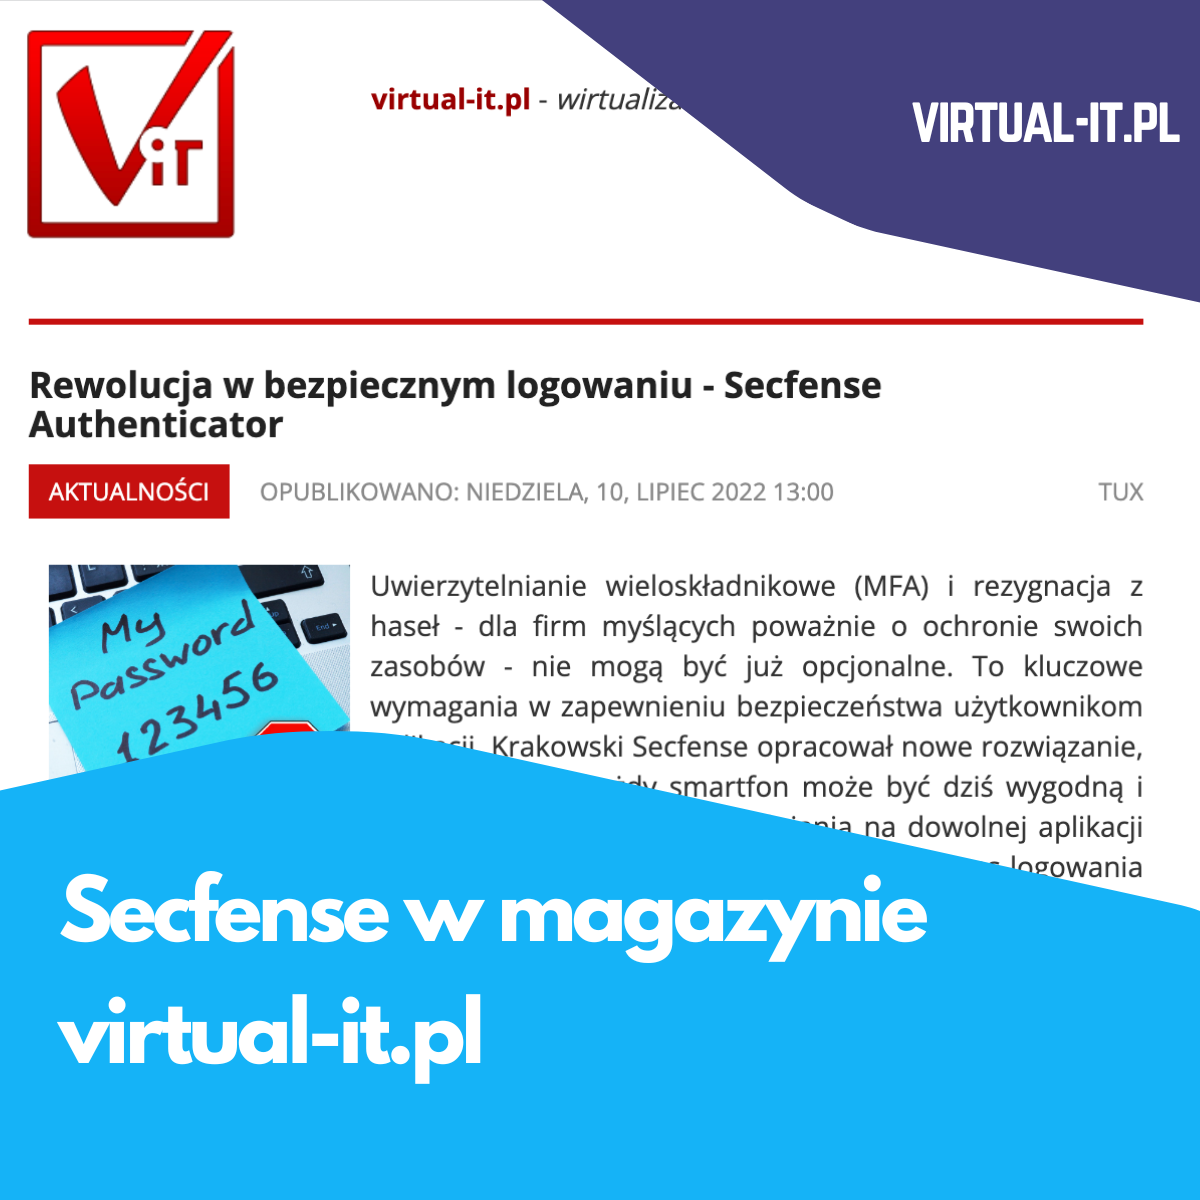 Secfense w magazynie  virtual-it.pl